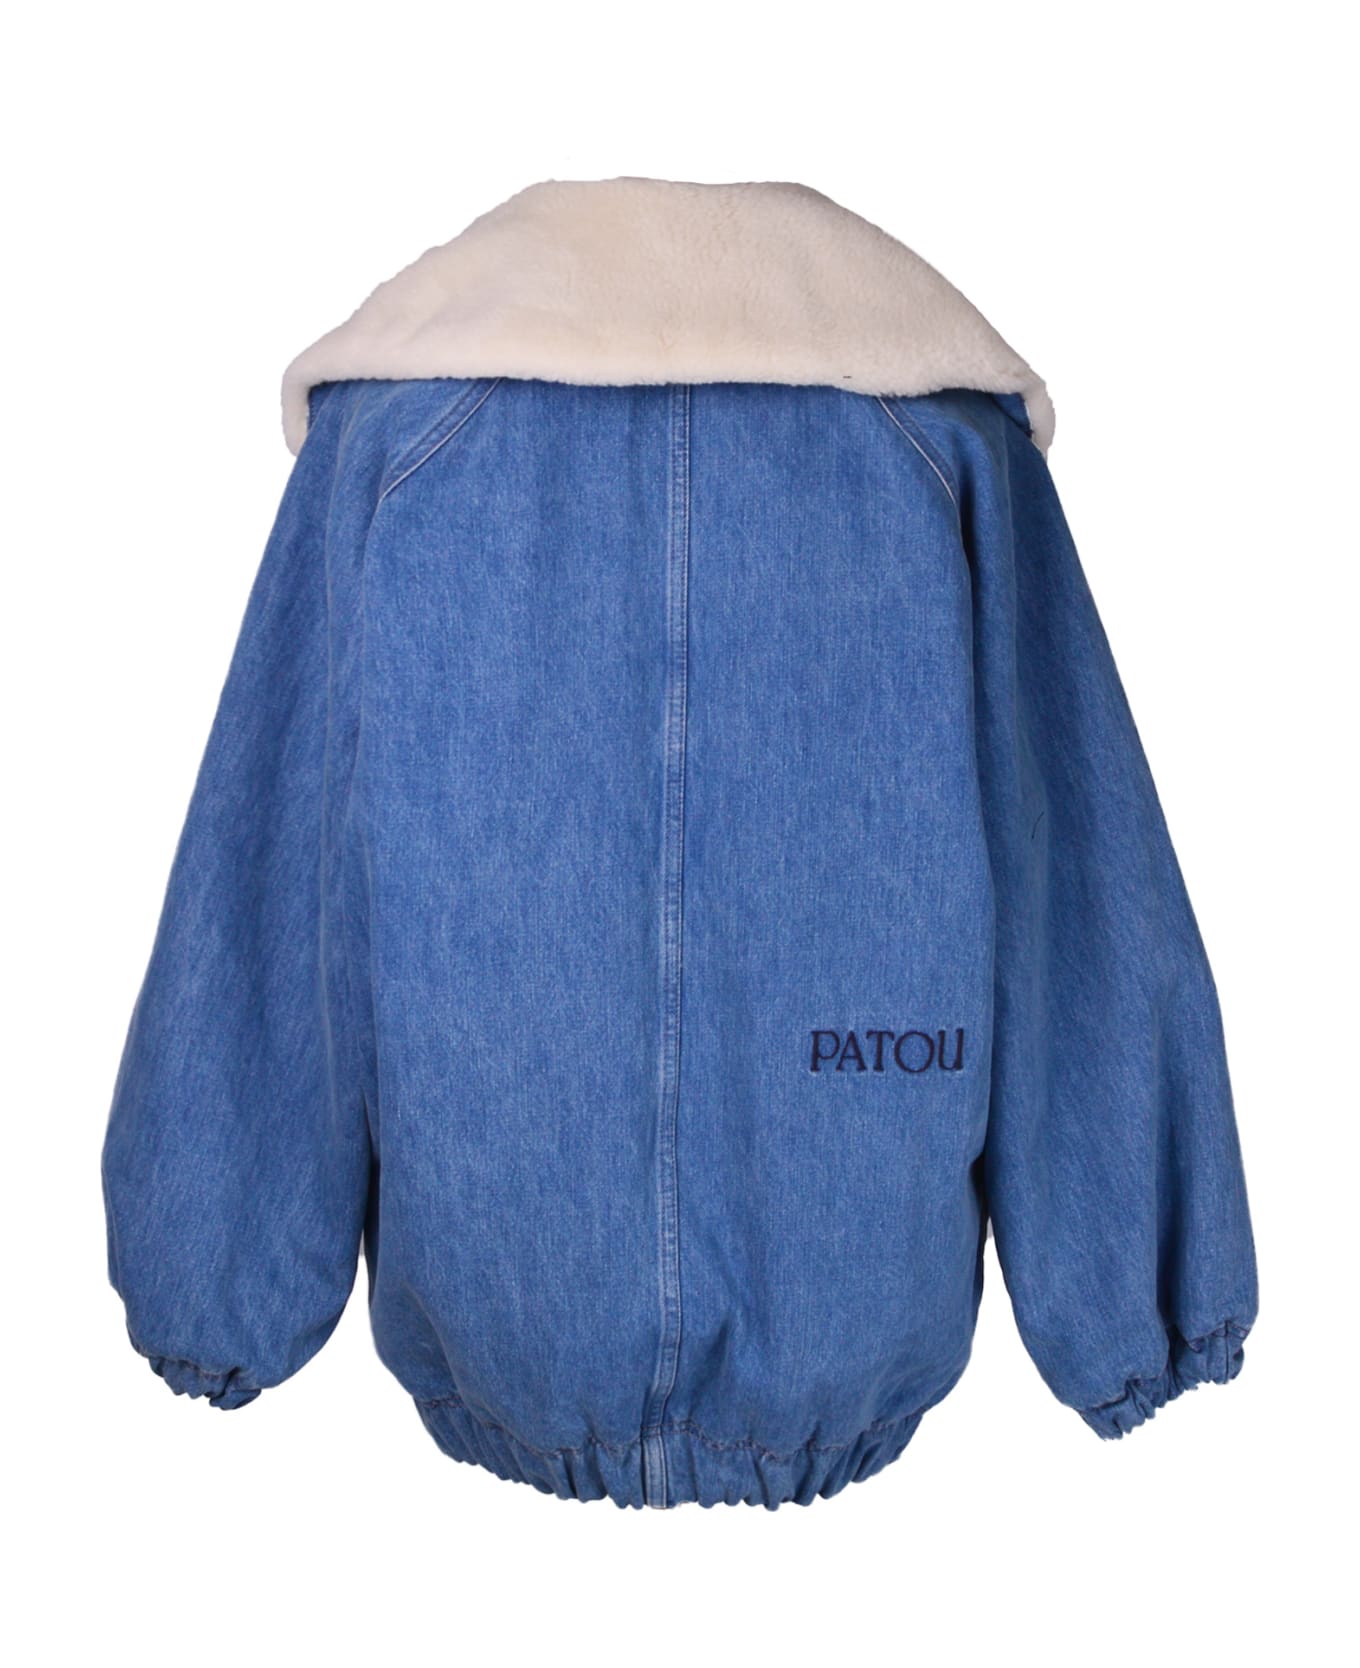 Patou Blue Denim Jacket - BLUE